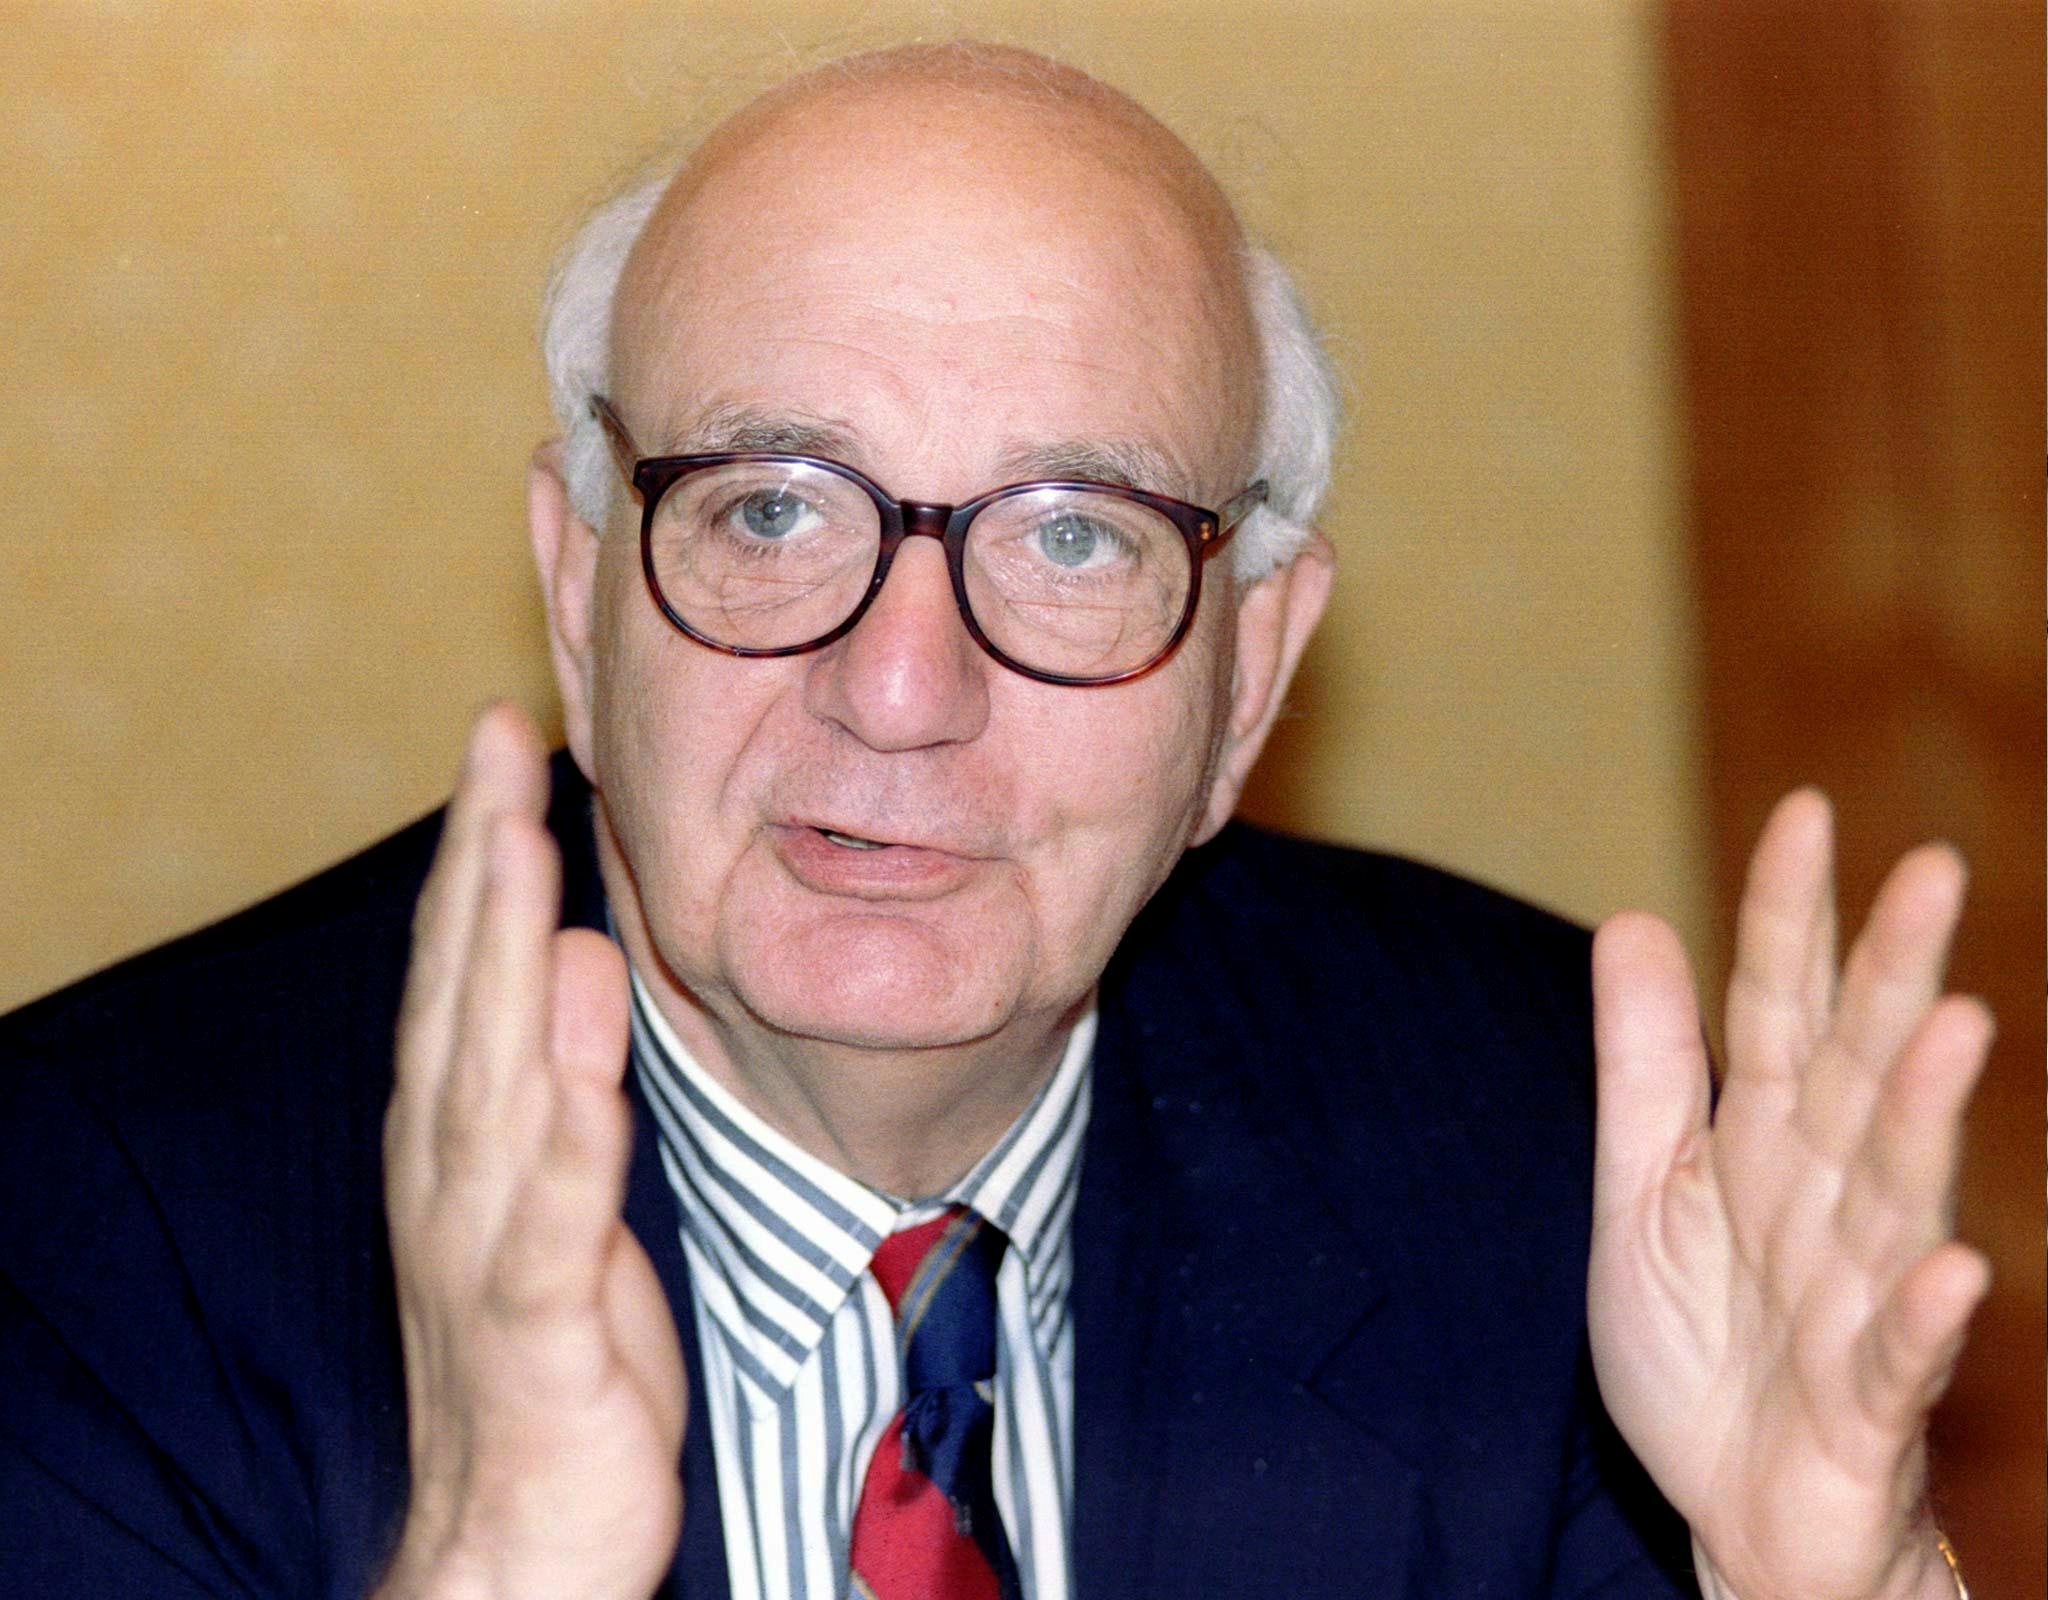 El presidente de la Fed durante el gobierno de Ronald Reagan,  Paul Volcker, apoyó el acuerdo con la Argentina durante el gobierno de Alfonsín